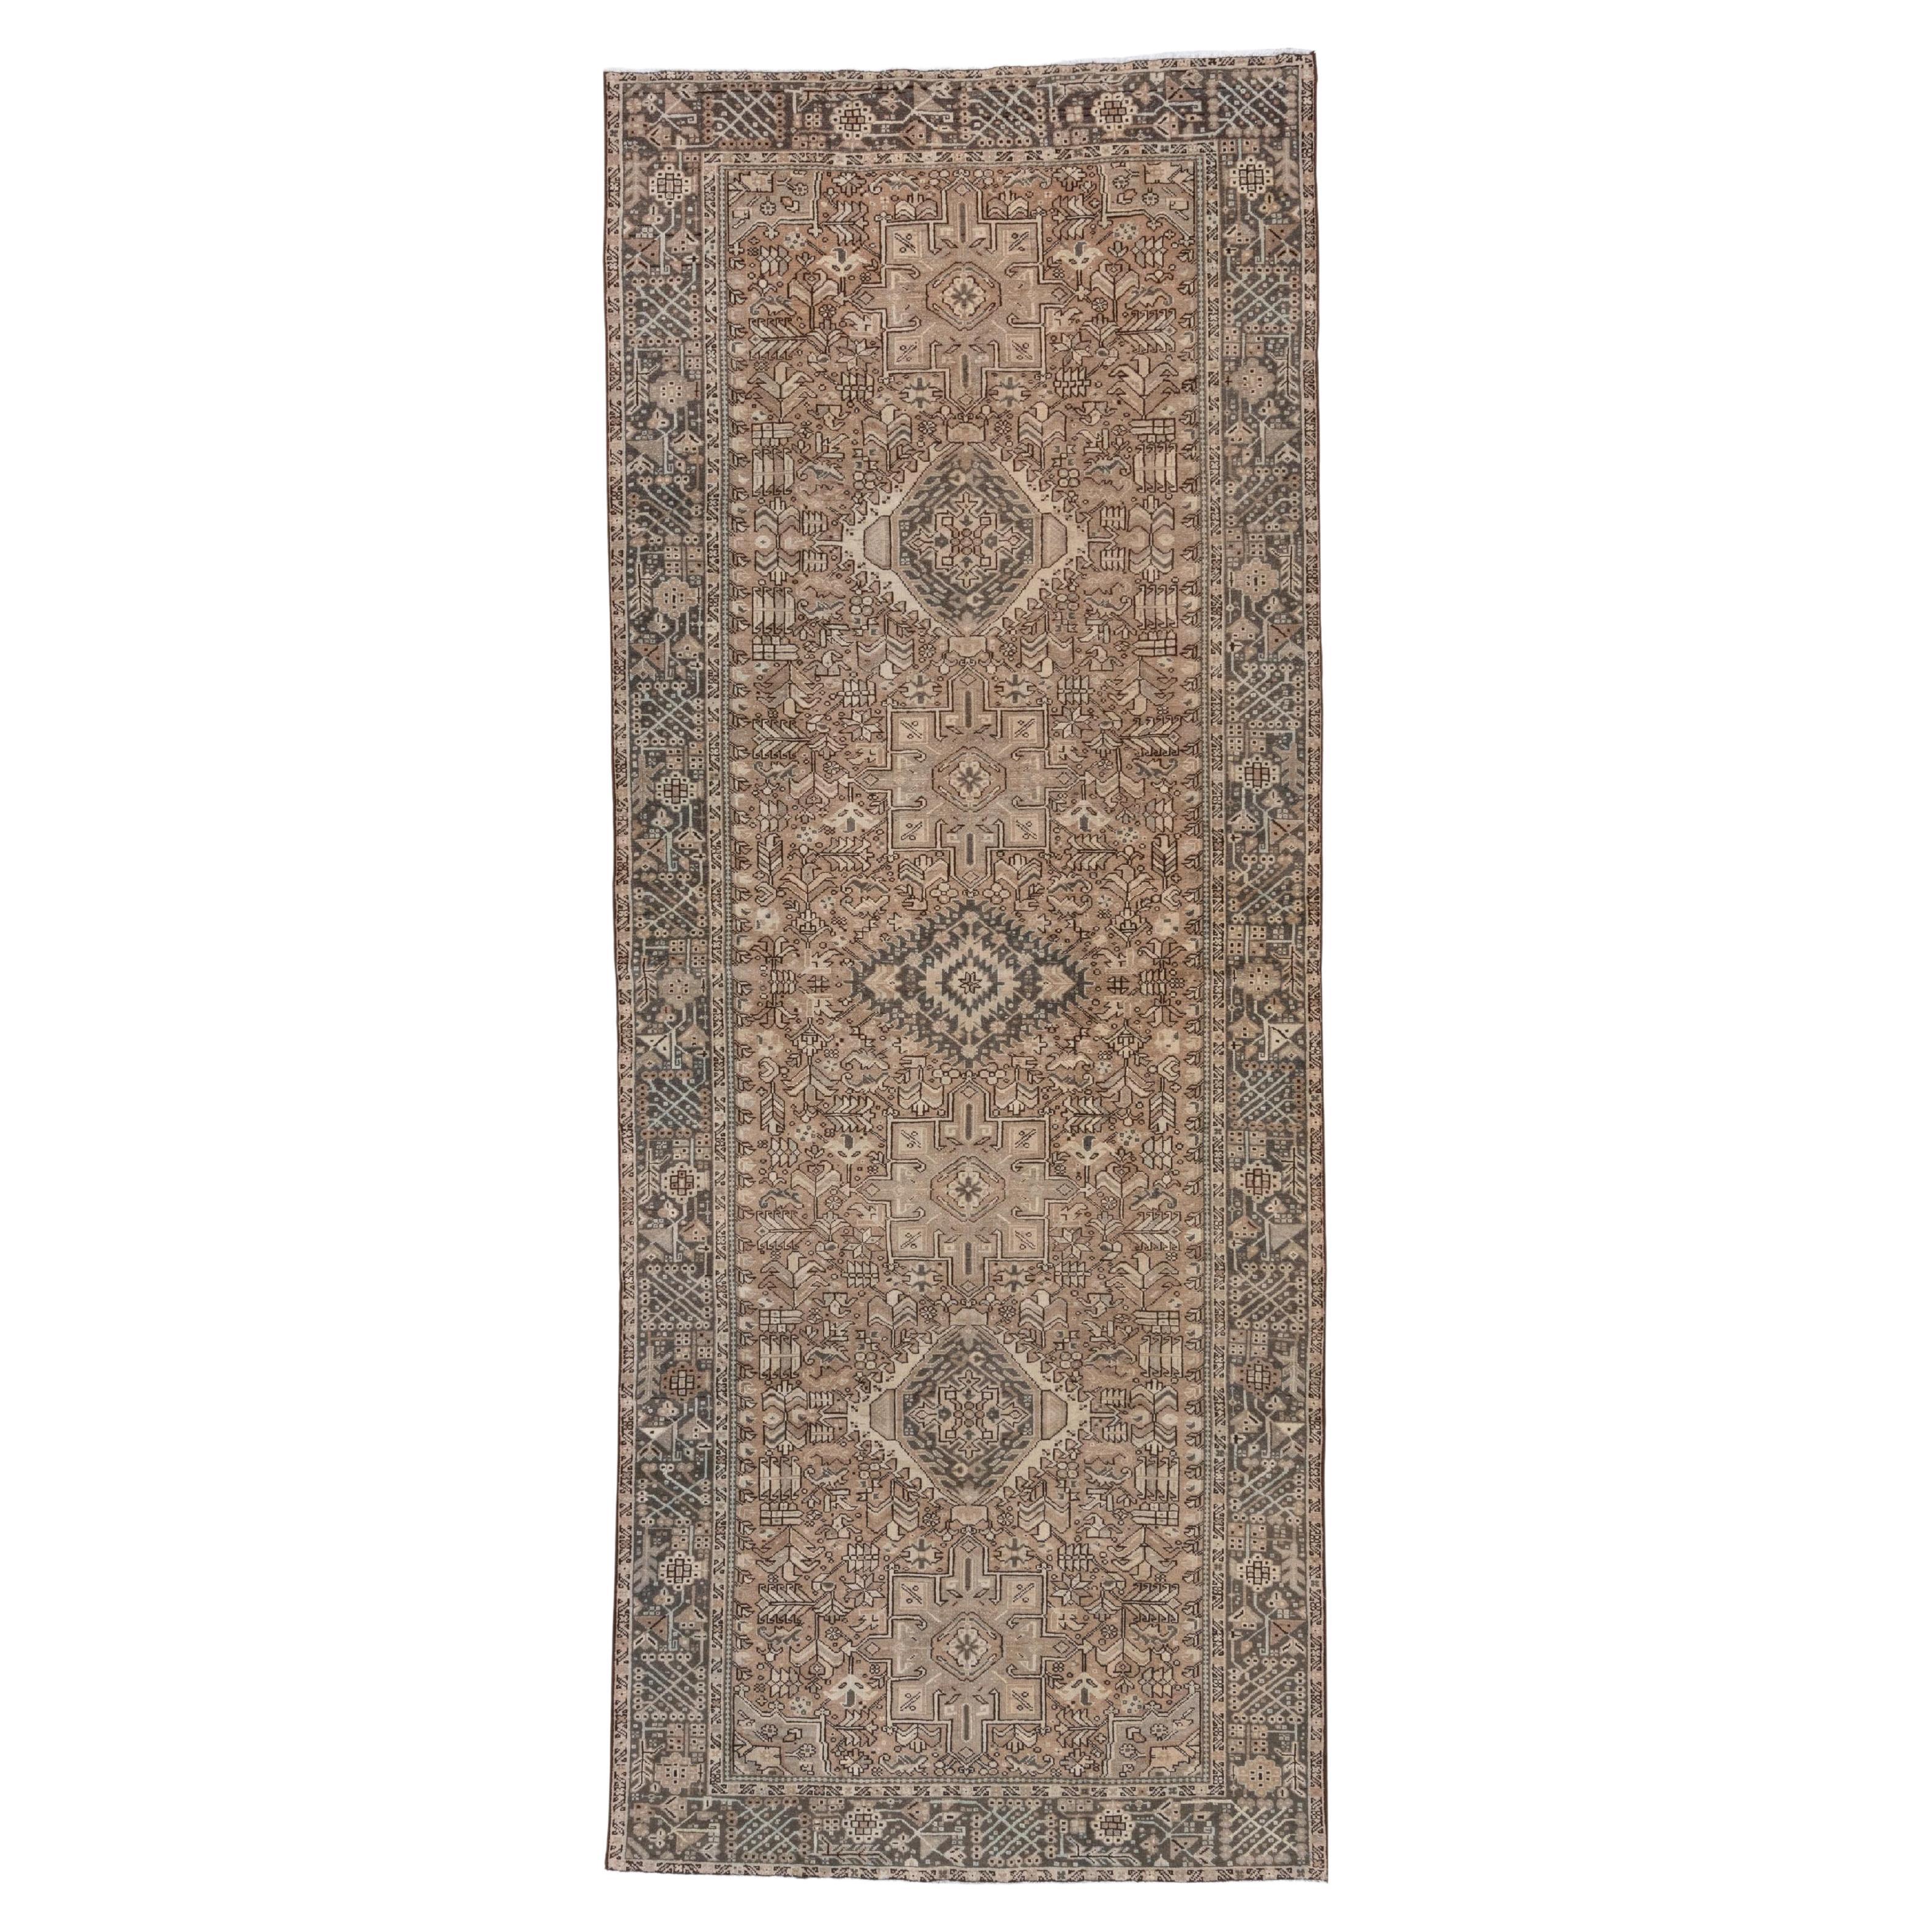 Tapis persan ancien de la galerie Karaje, champ brun clair, magnifiques bordures